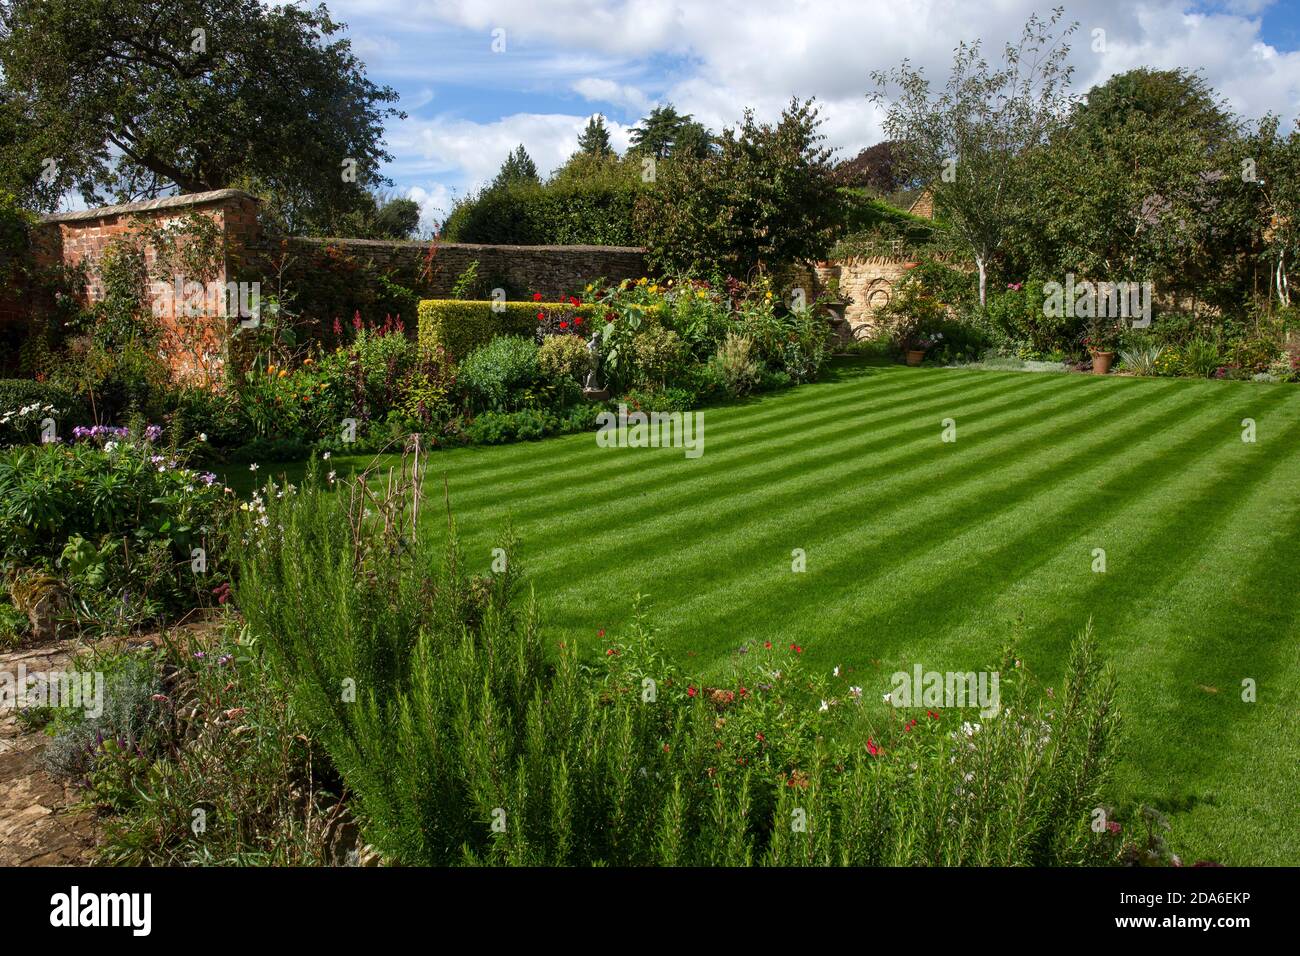 Jardin anglais avec pelouse à rayures et planches d'été, Angleterre, Europe Banque D'Images